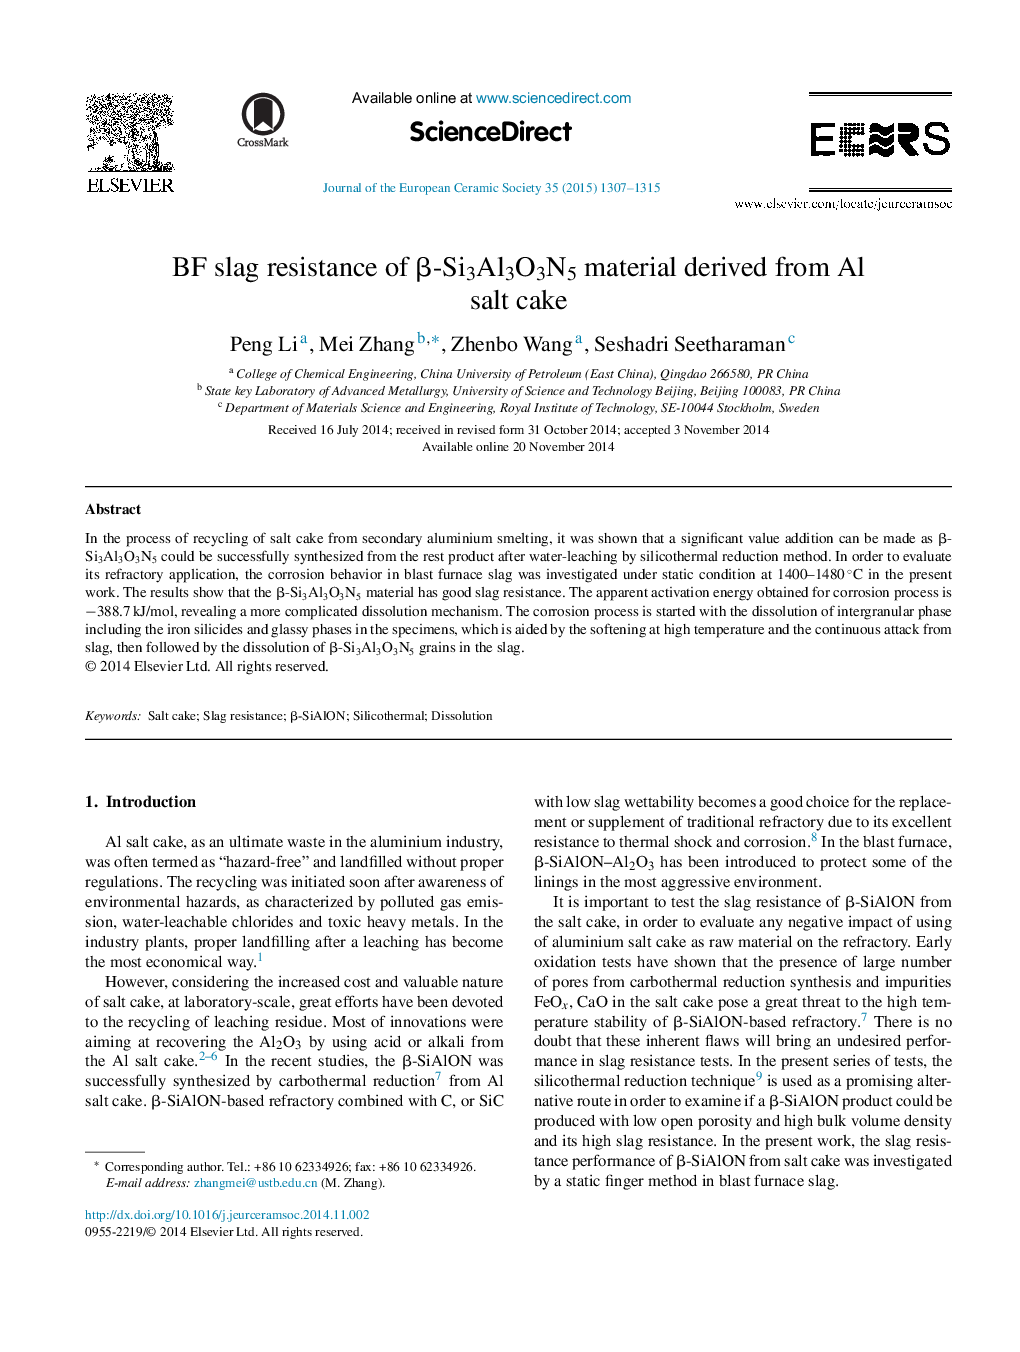 BF slag resistance of β-Si3Al3O3N5 material derived from Al salt cake